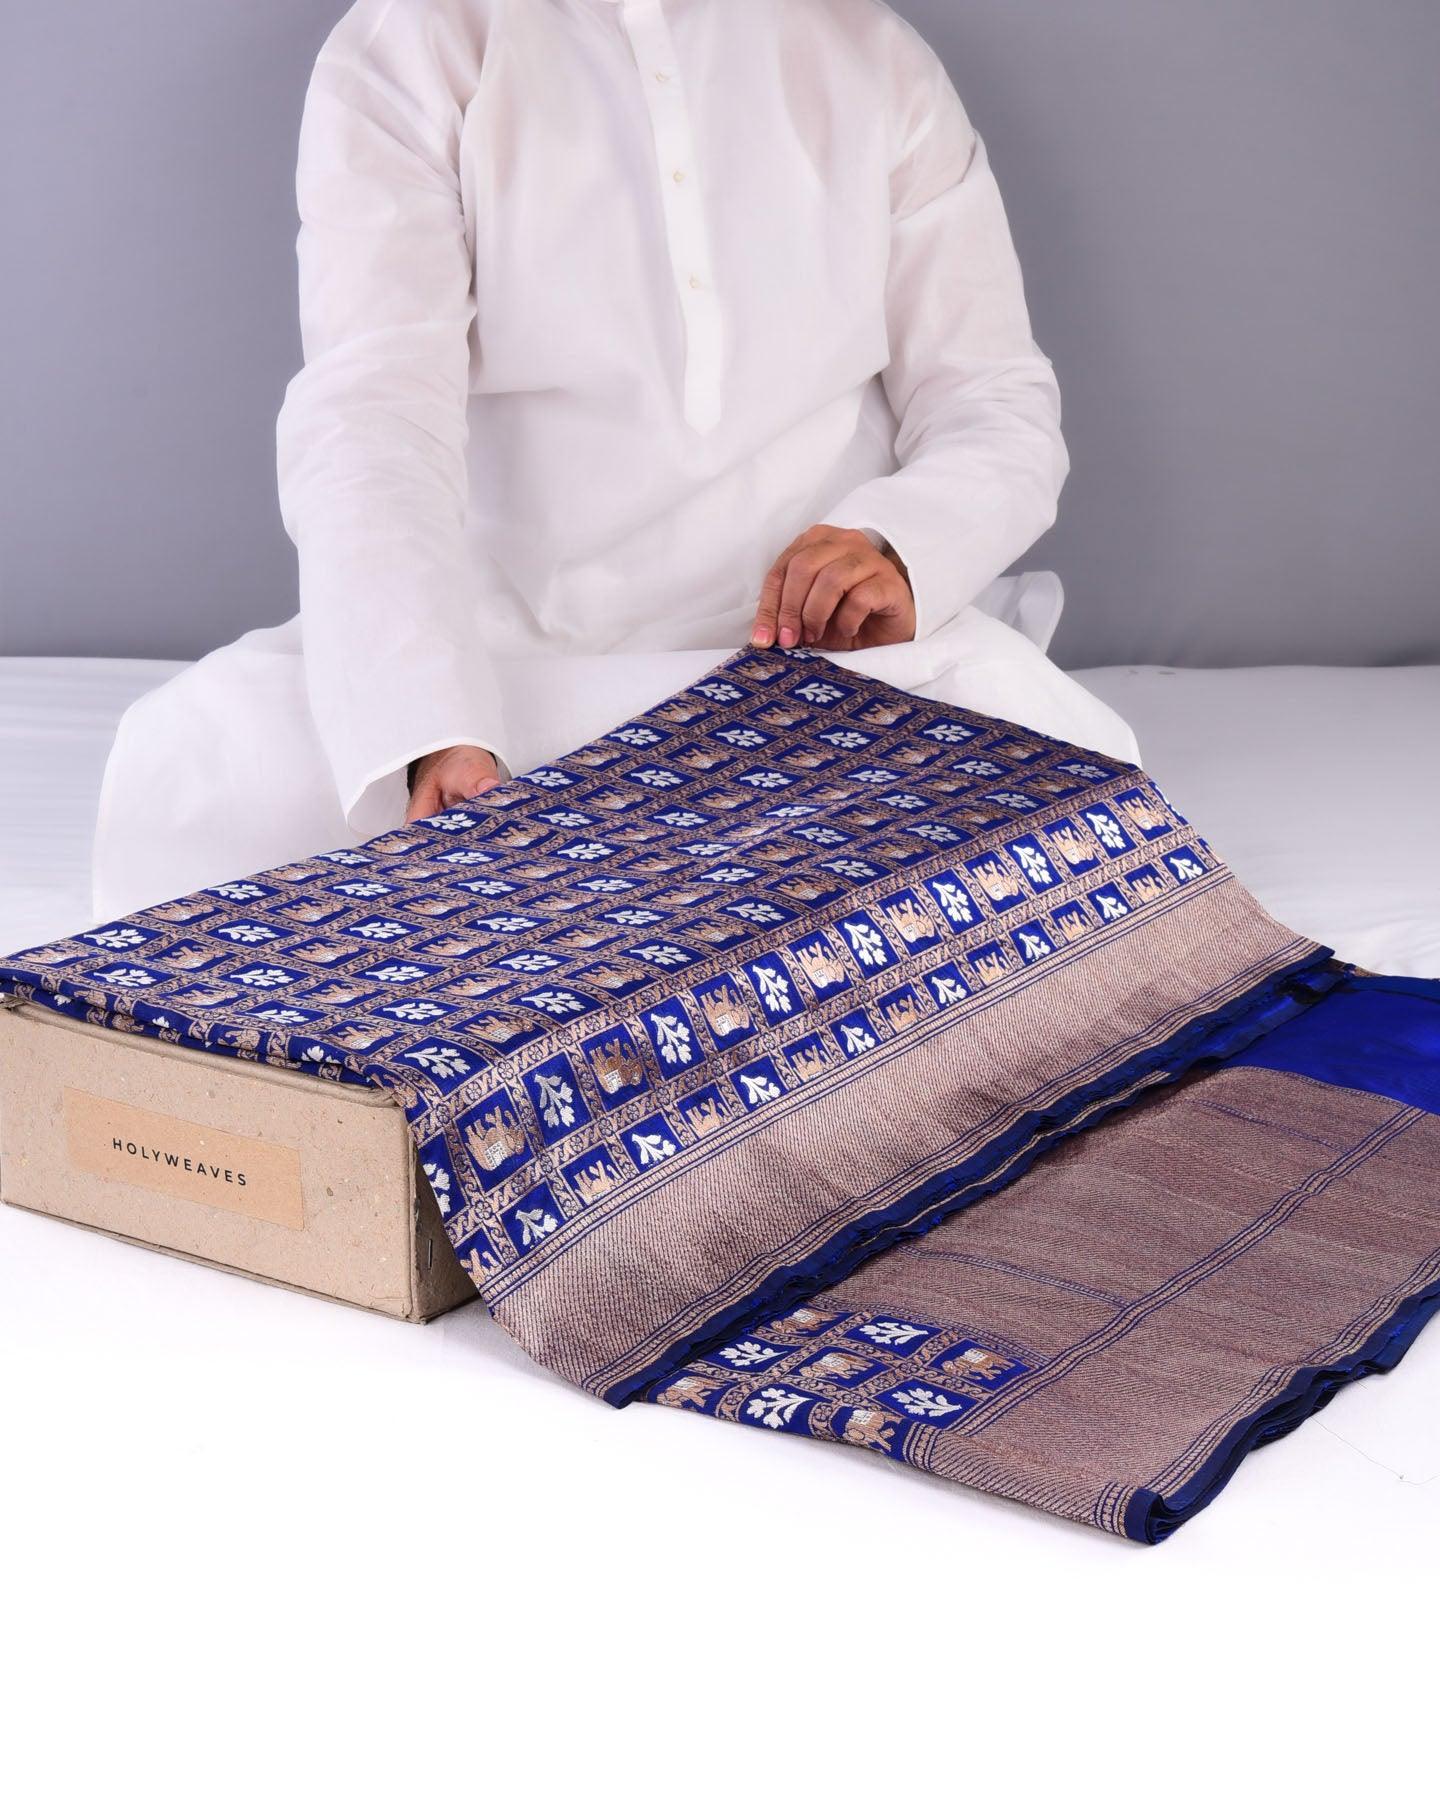 Navy Blue Banarasi Patola Sona-Rupa Brocade Handwoven Katan Silk Saree - By HolyWeaves, Benares